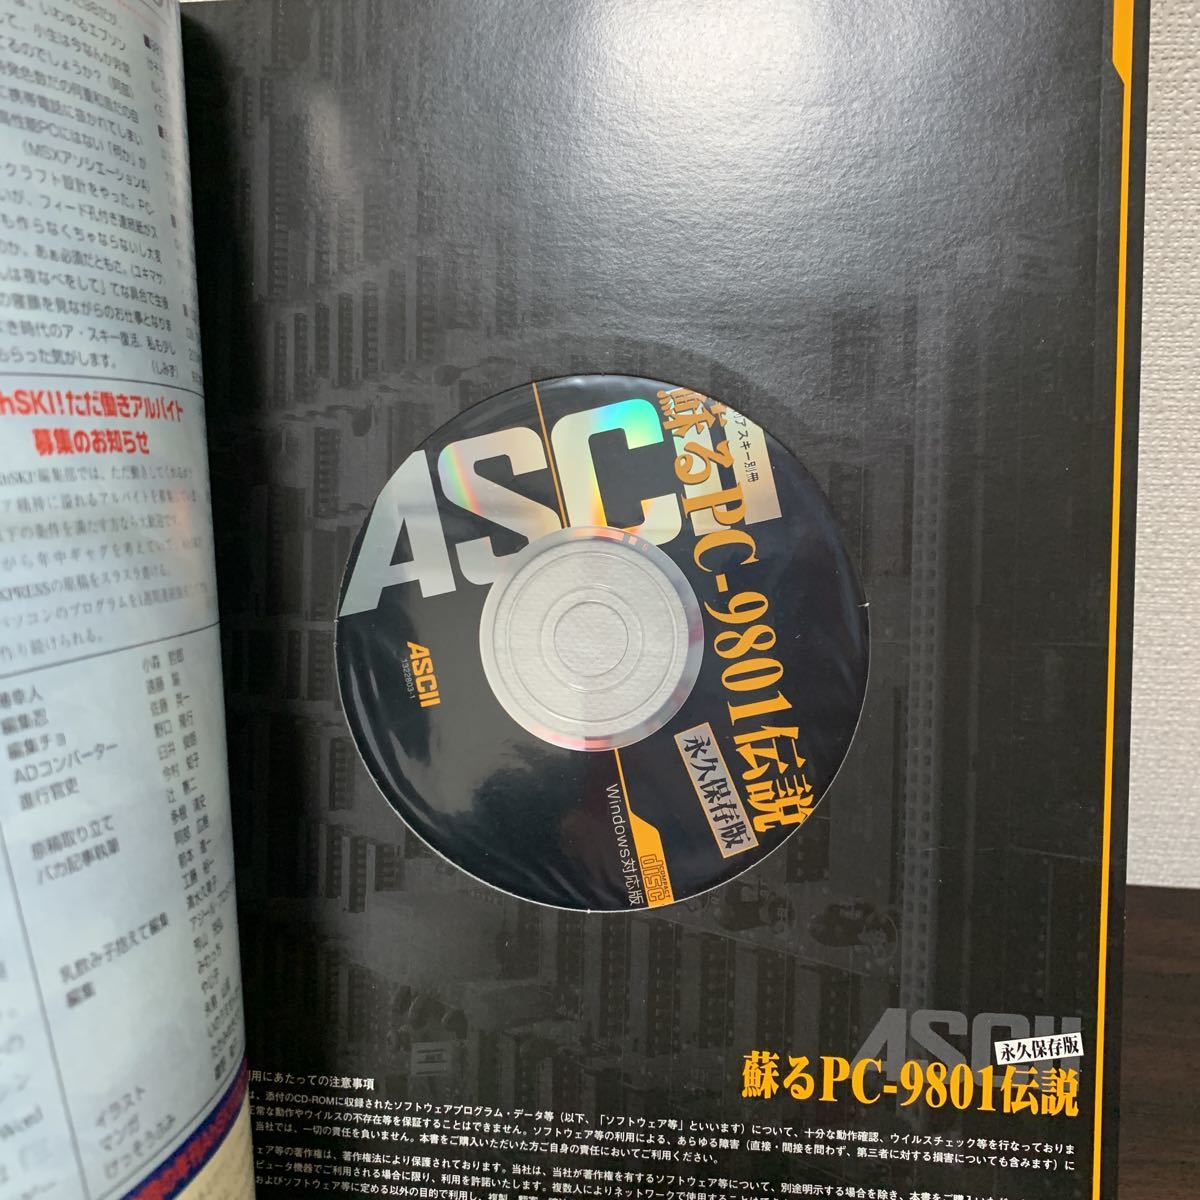  долгосрочный сохранение версия ..PC-9801 легенда CD-ROM есть переплет нераспечатанный 